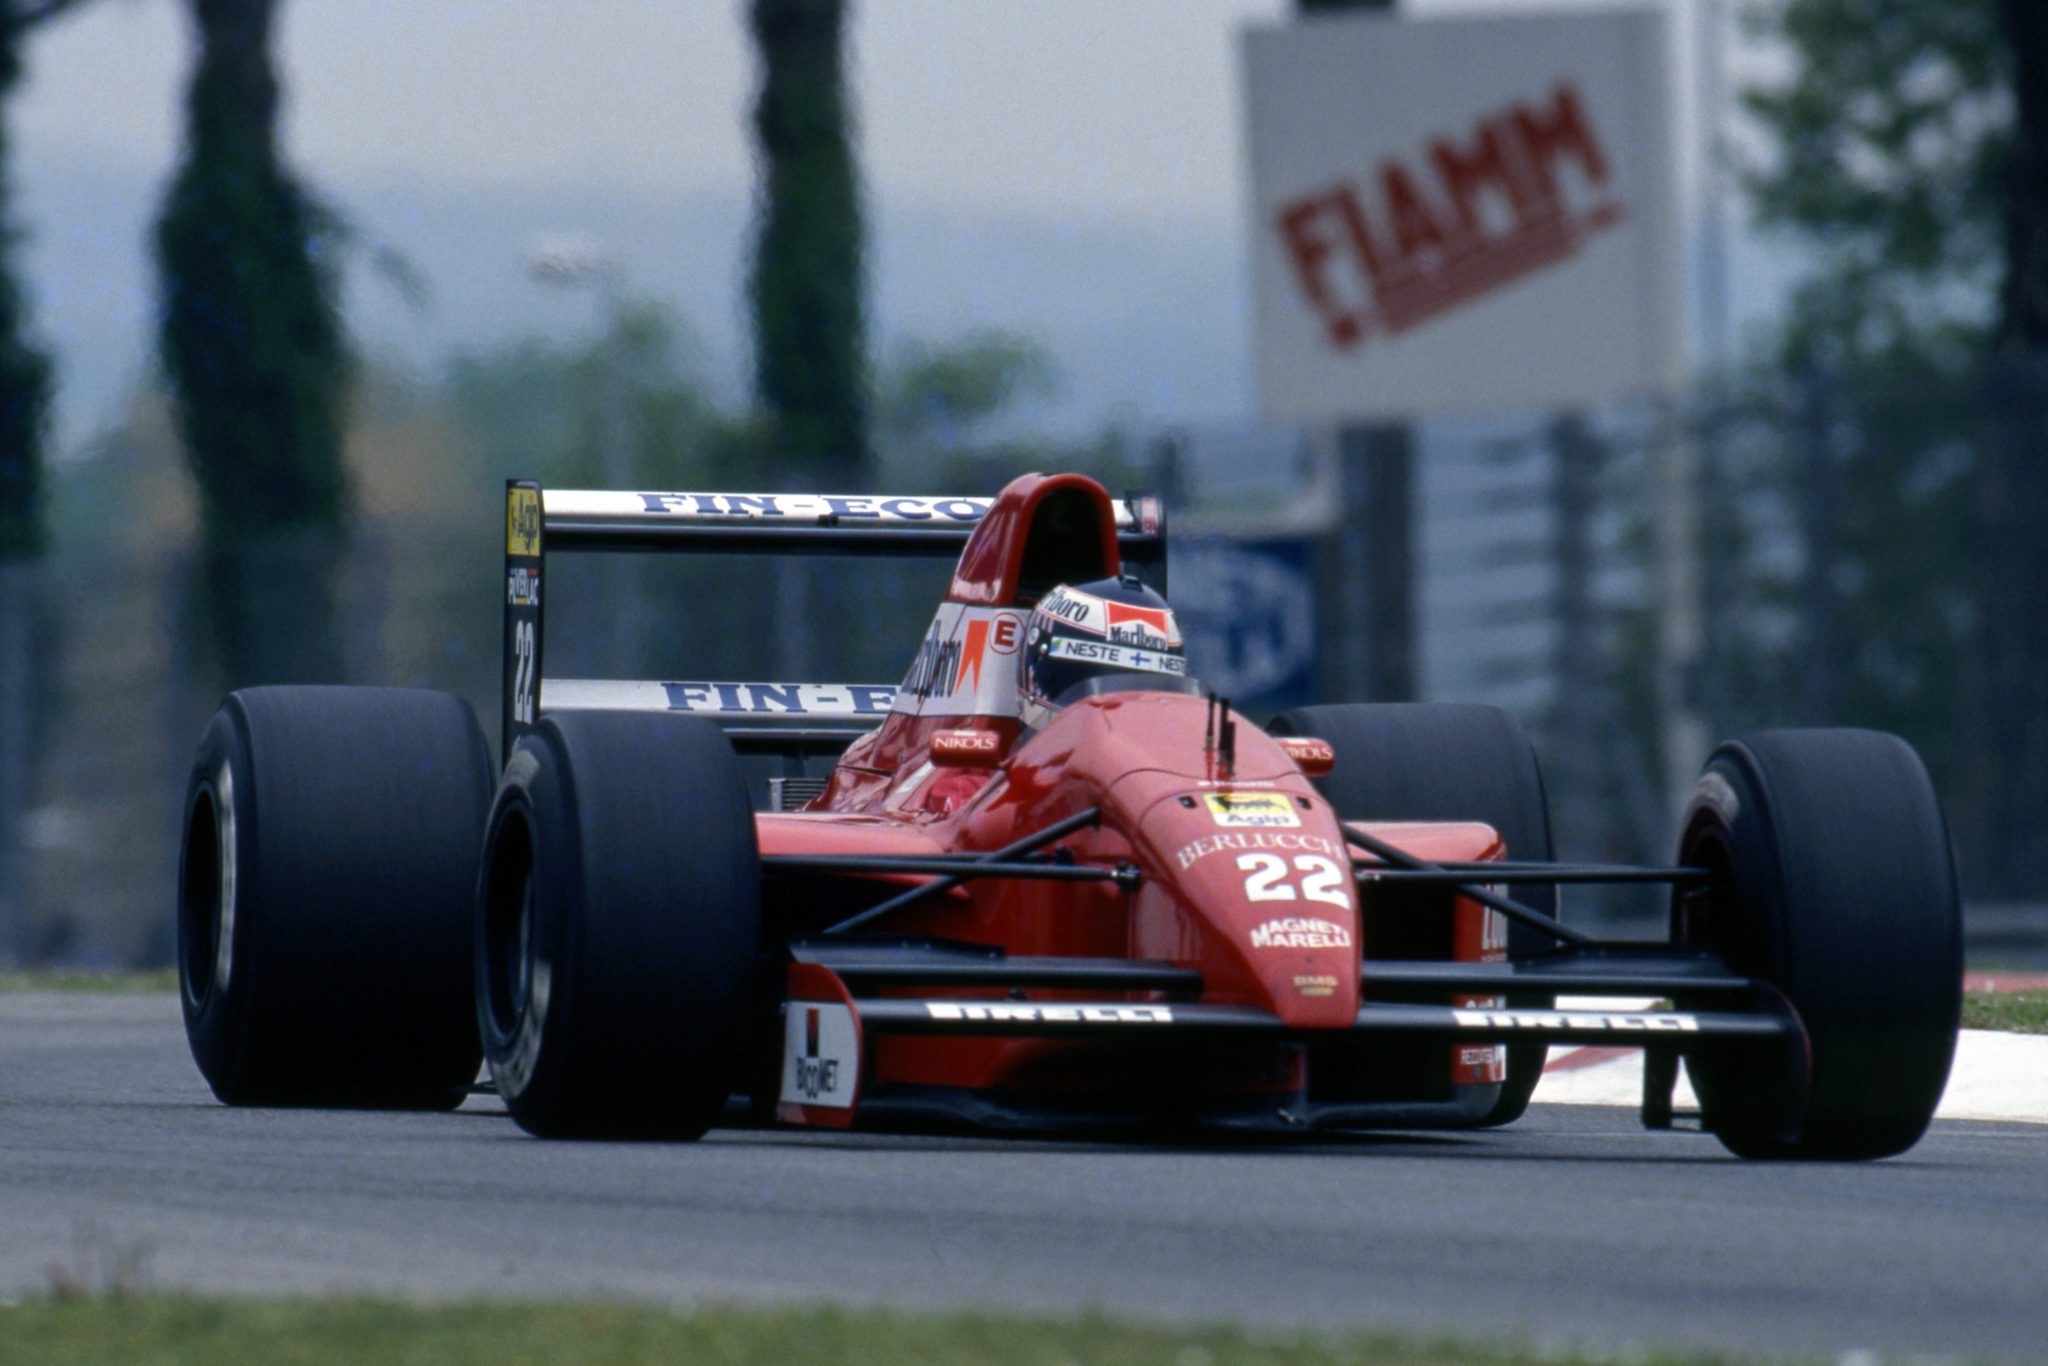 A Formula 1 car at Imola.